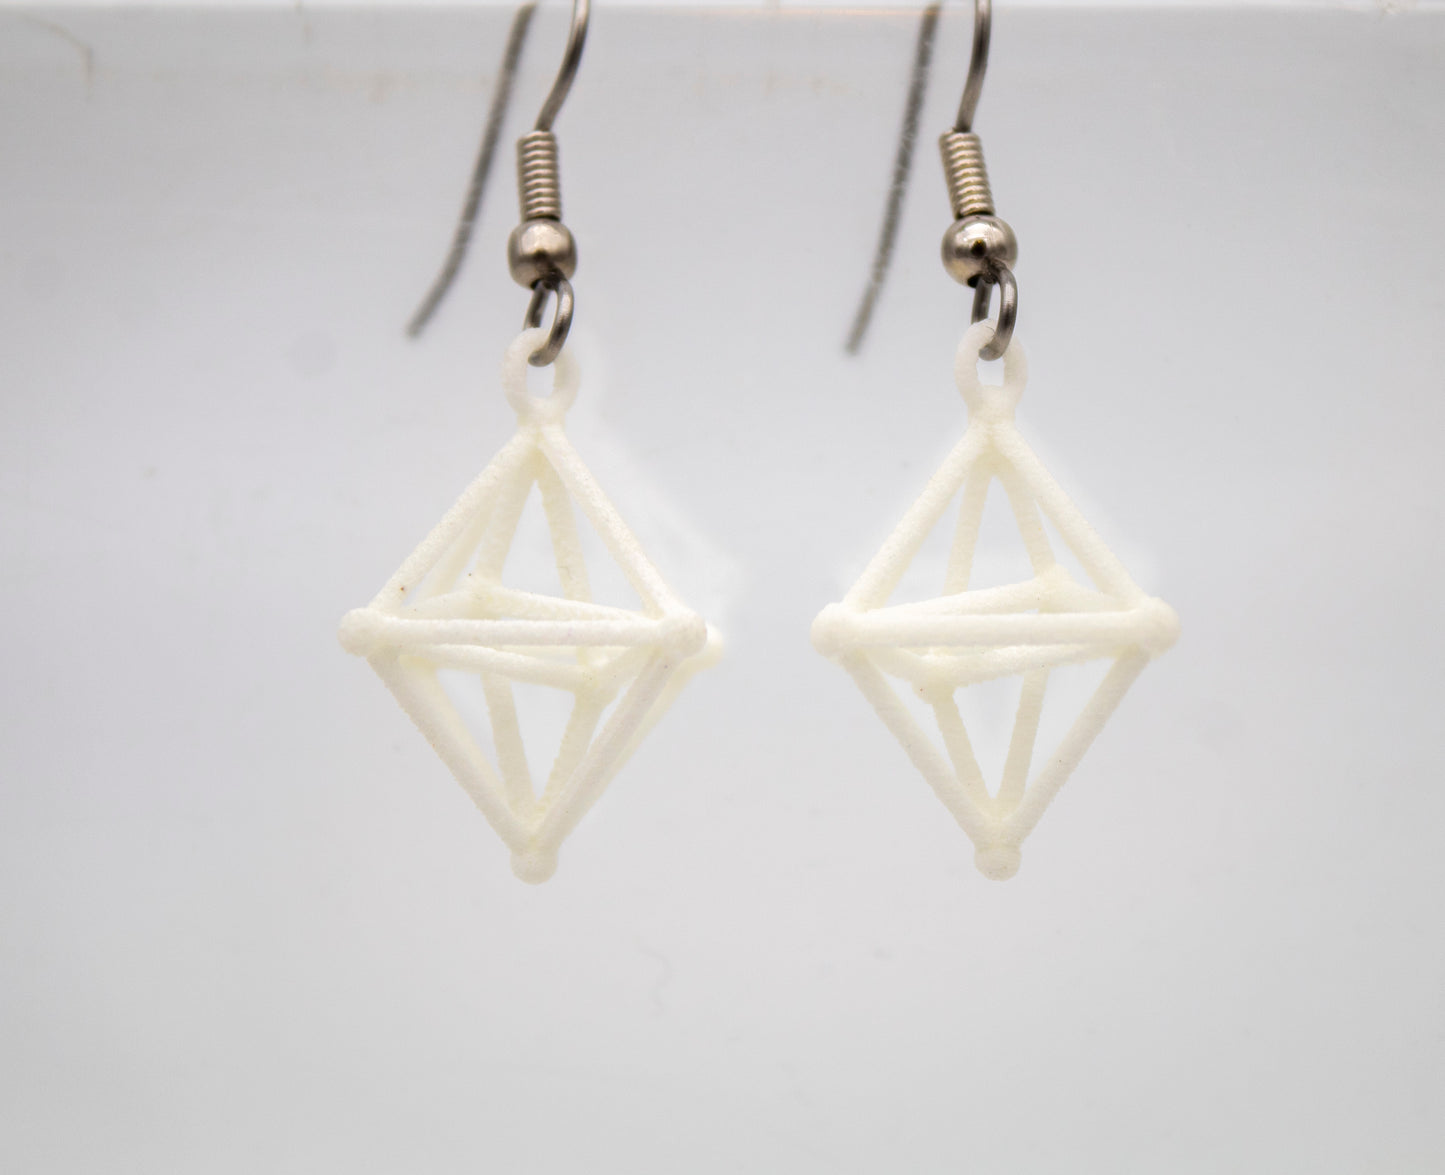 Hyperoctahedron Earrings